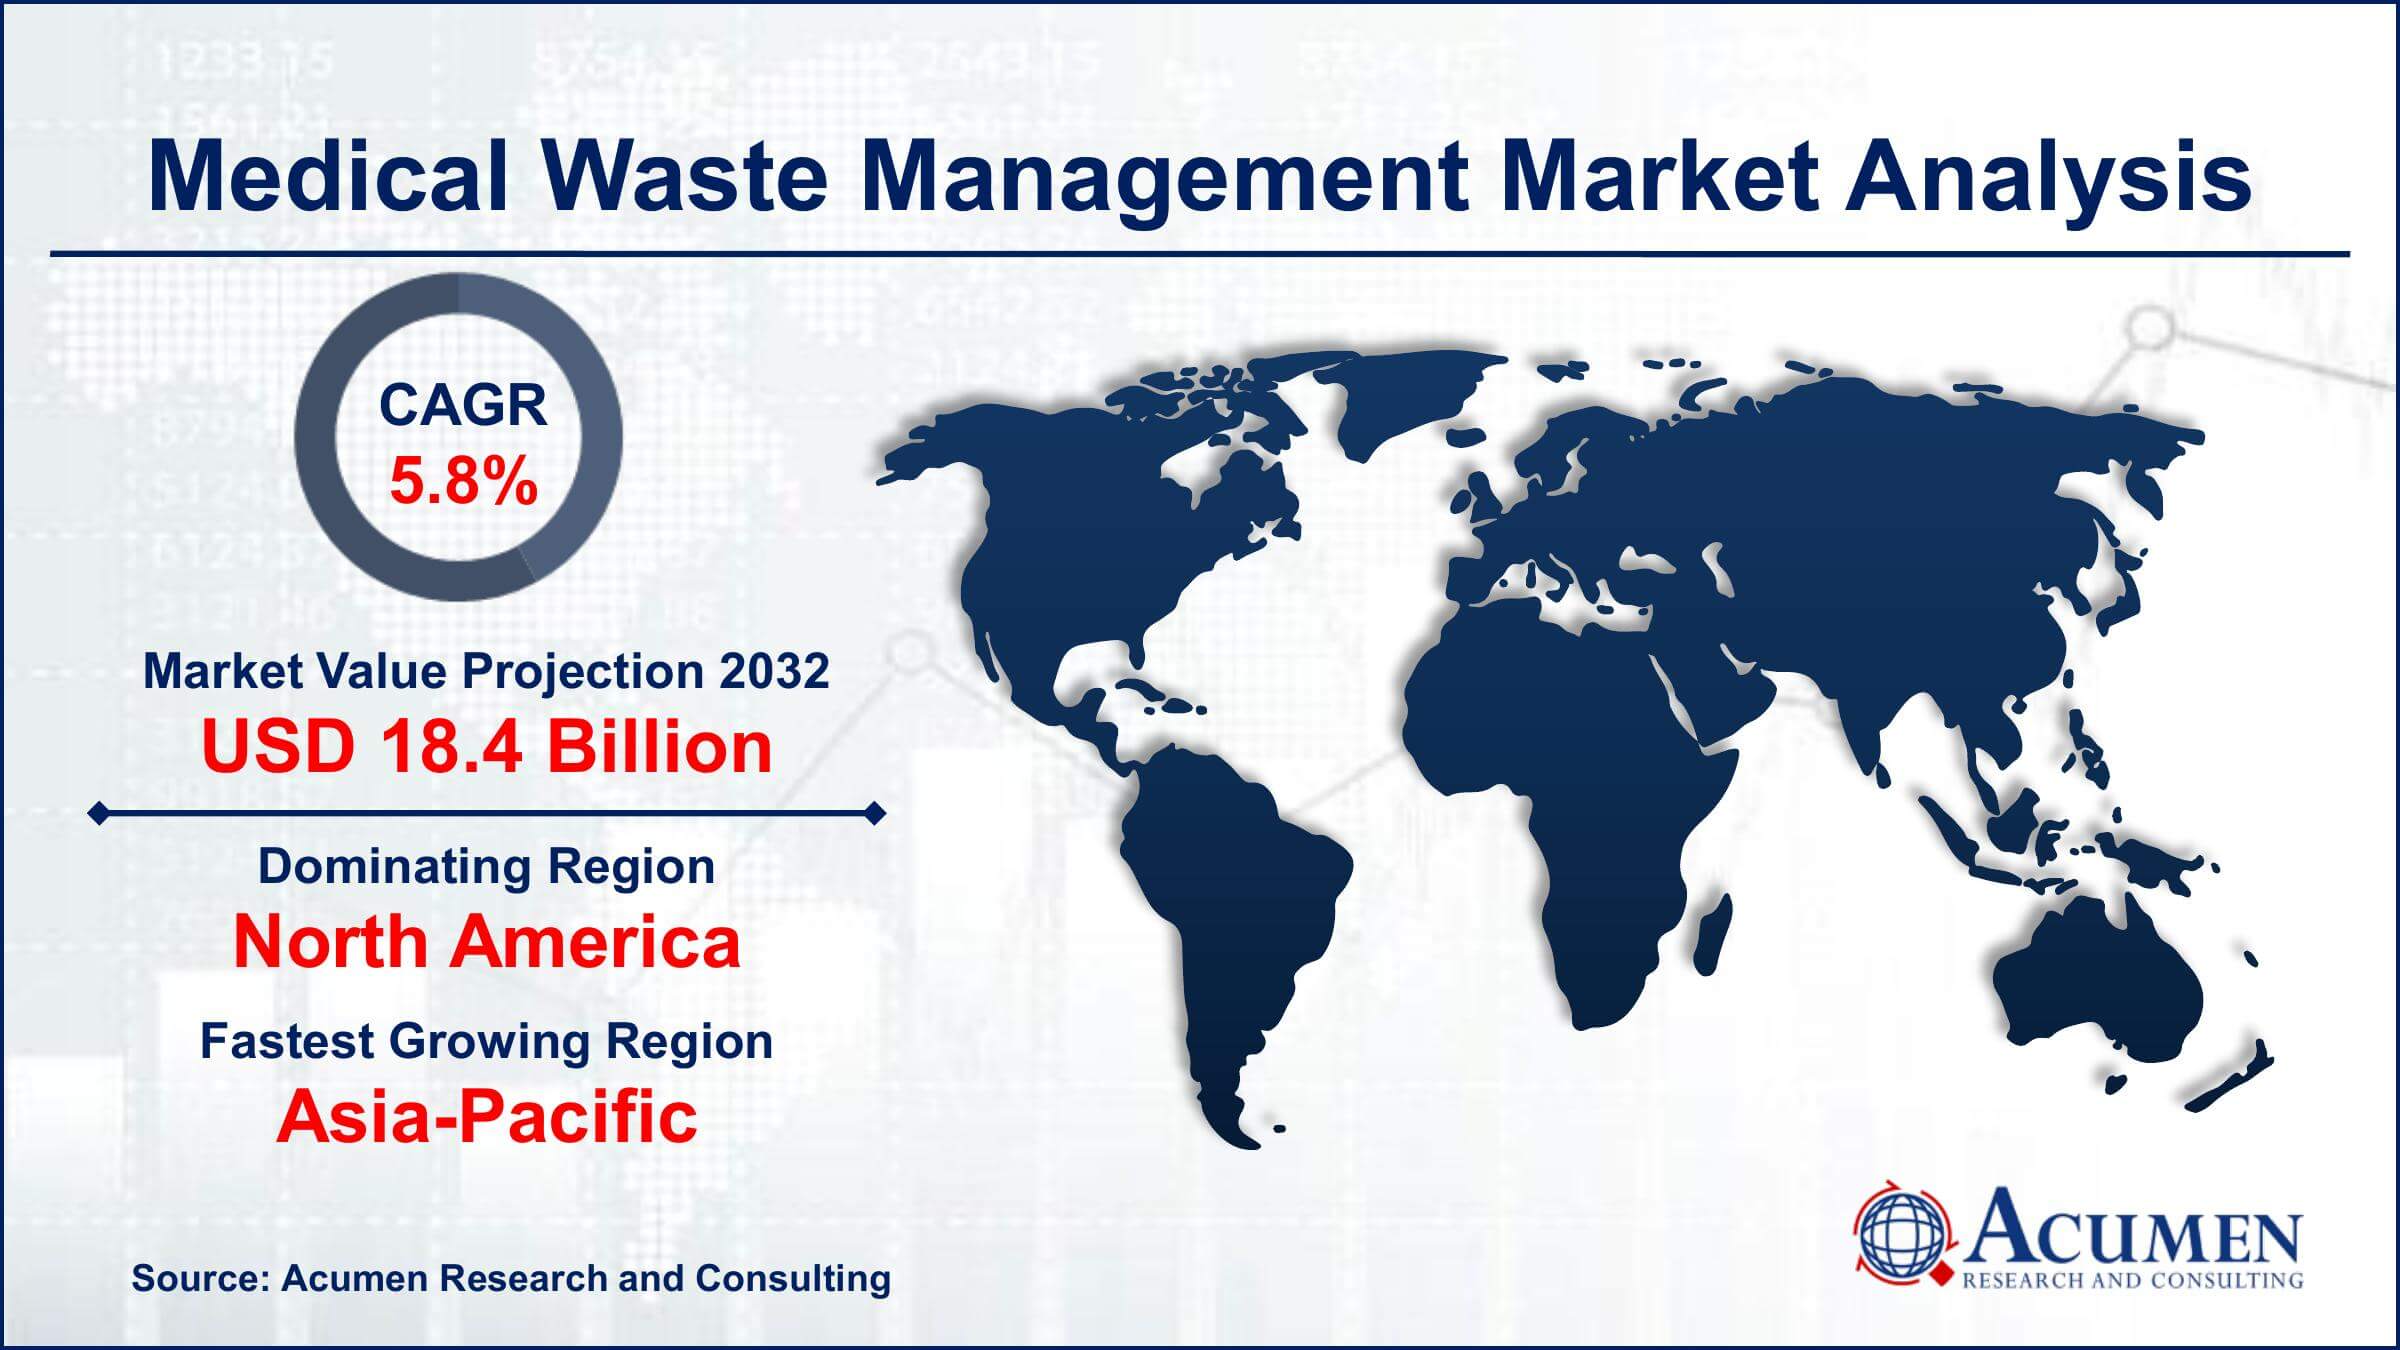 Global Medical Waste Management Market Trends